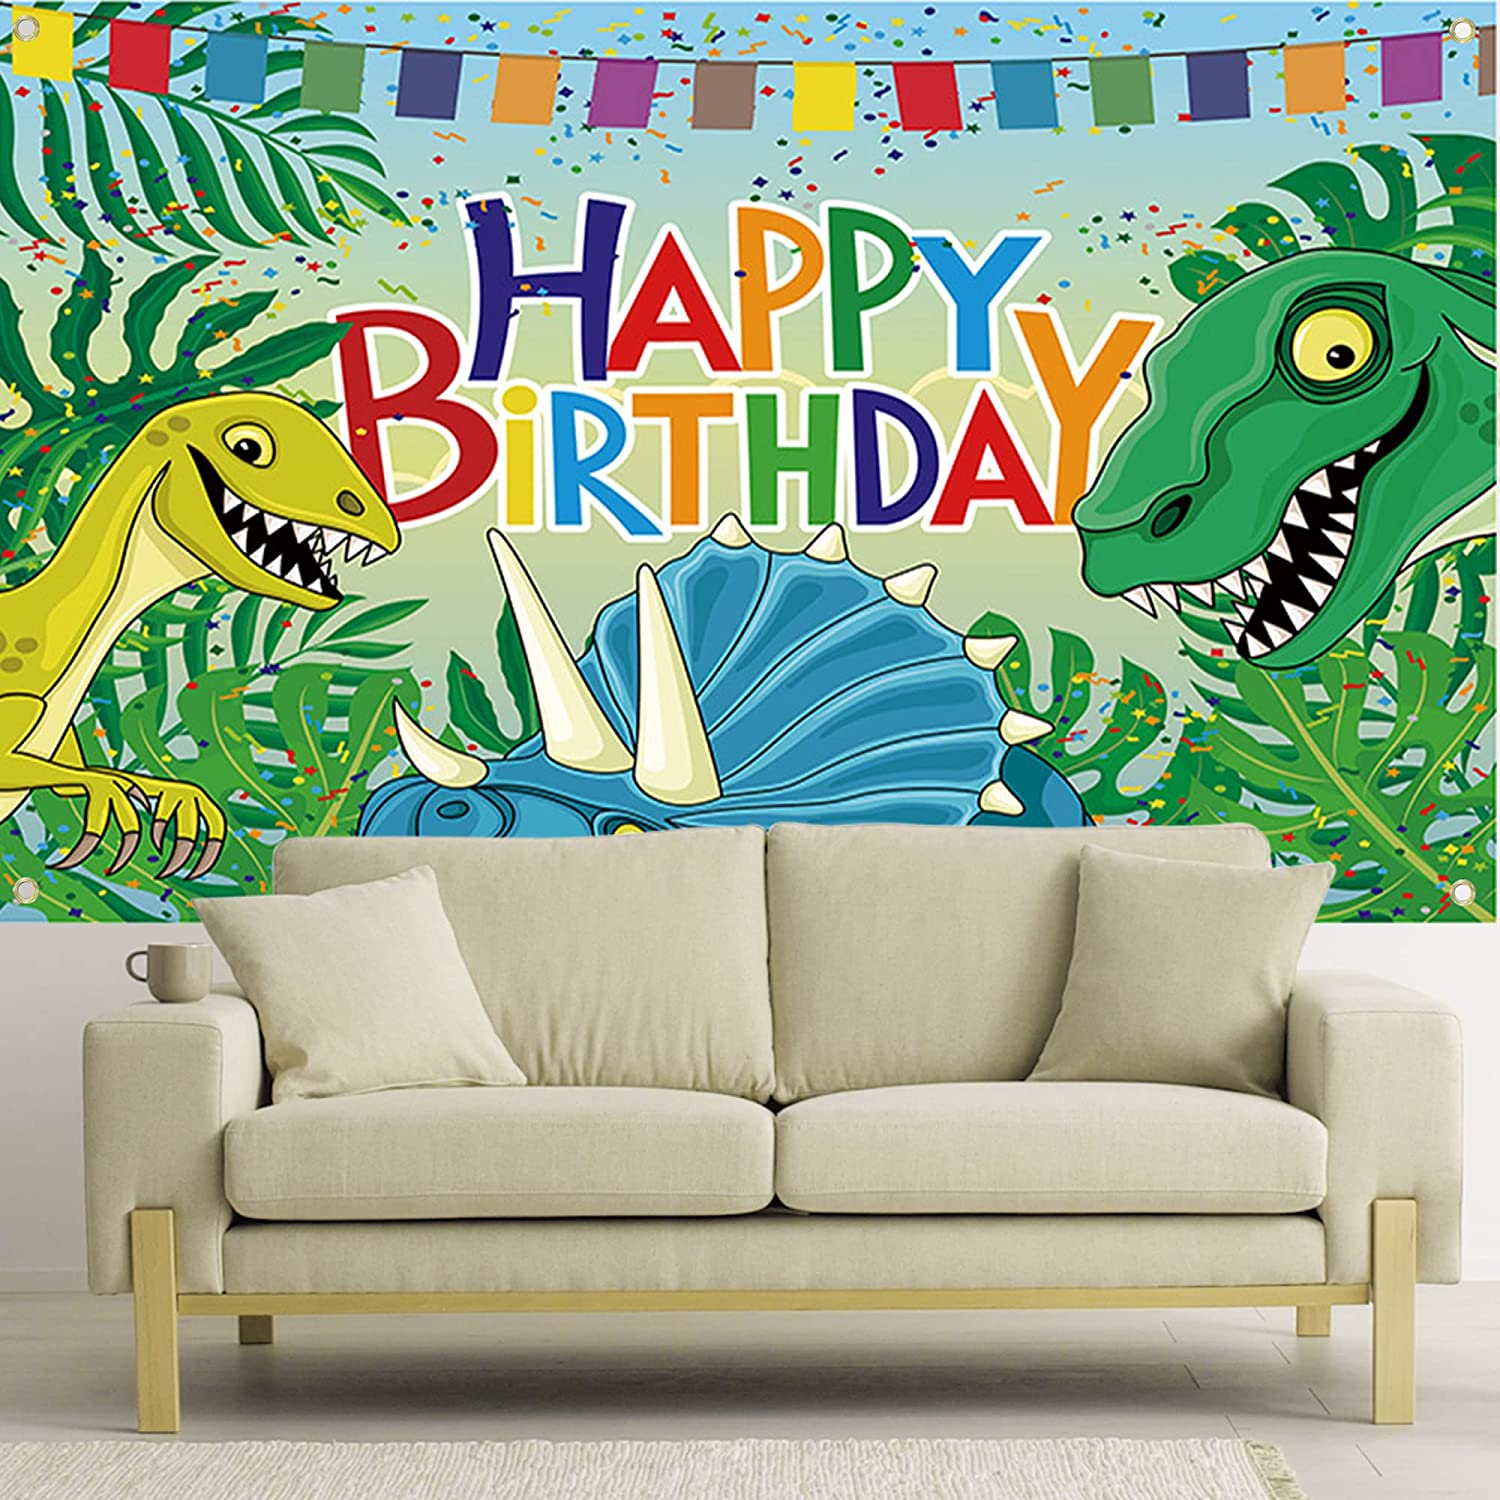 بوستر خلفيه عيد ميلاد بتصميم ديناصورات